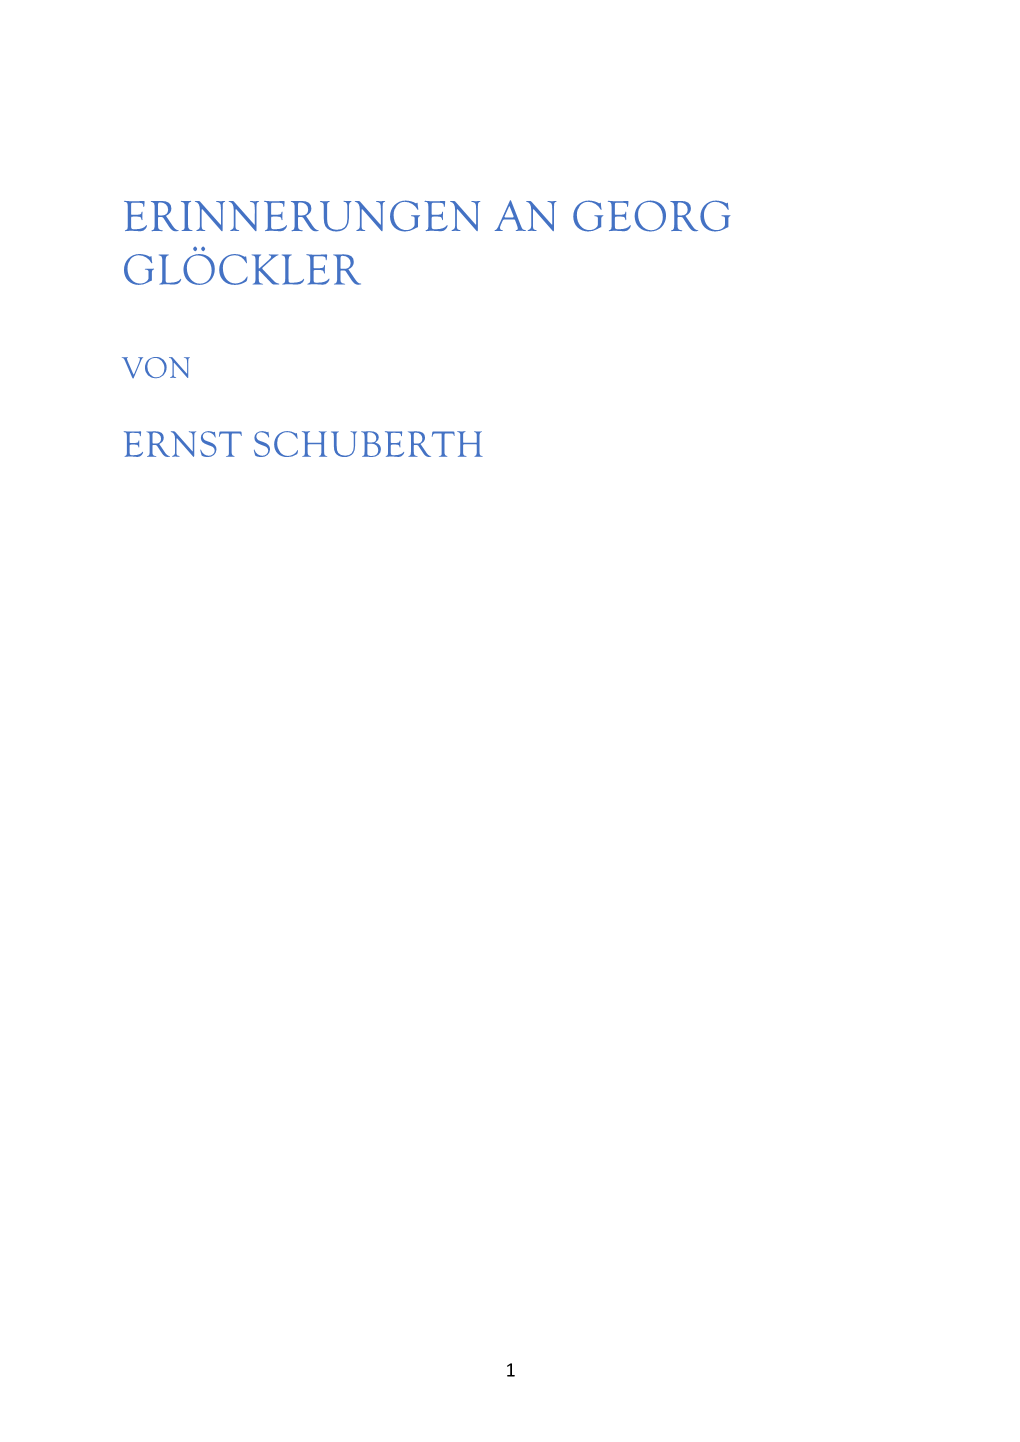 Erinnerungen an Georg Glöckler Von Ernst Schuberth